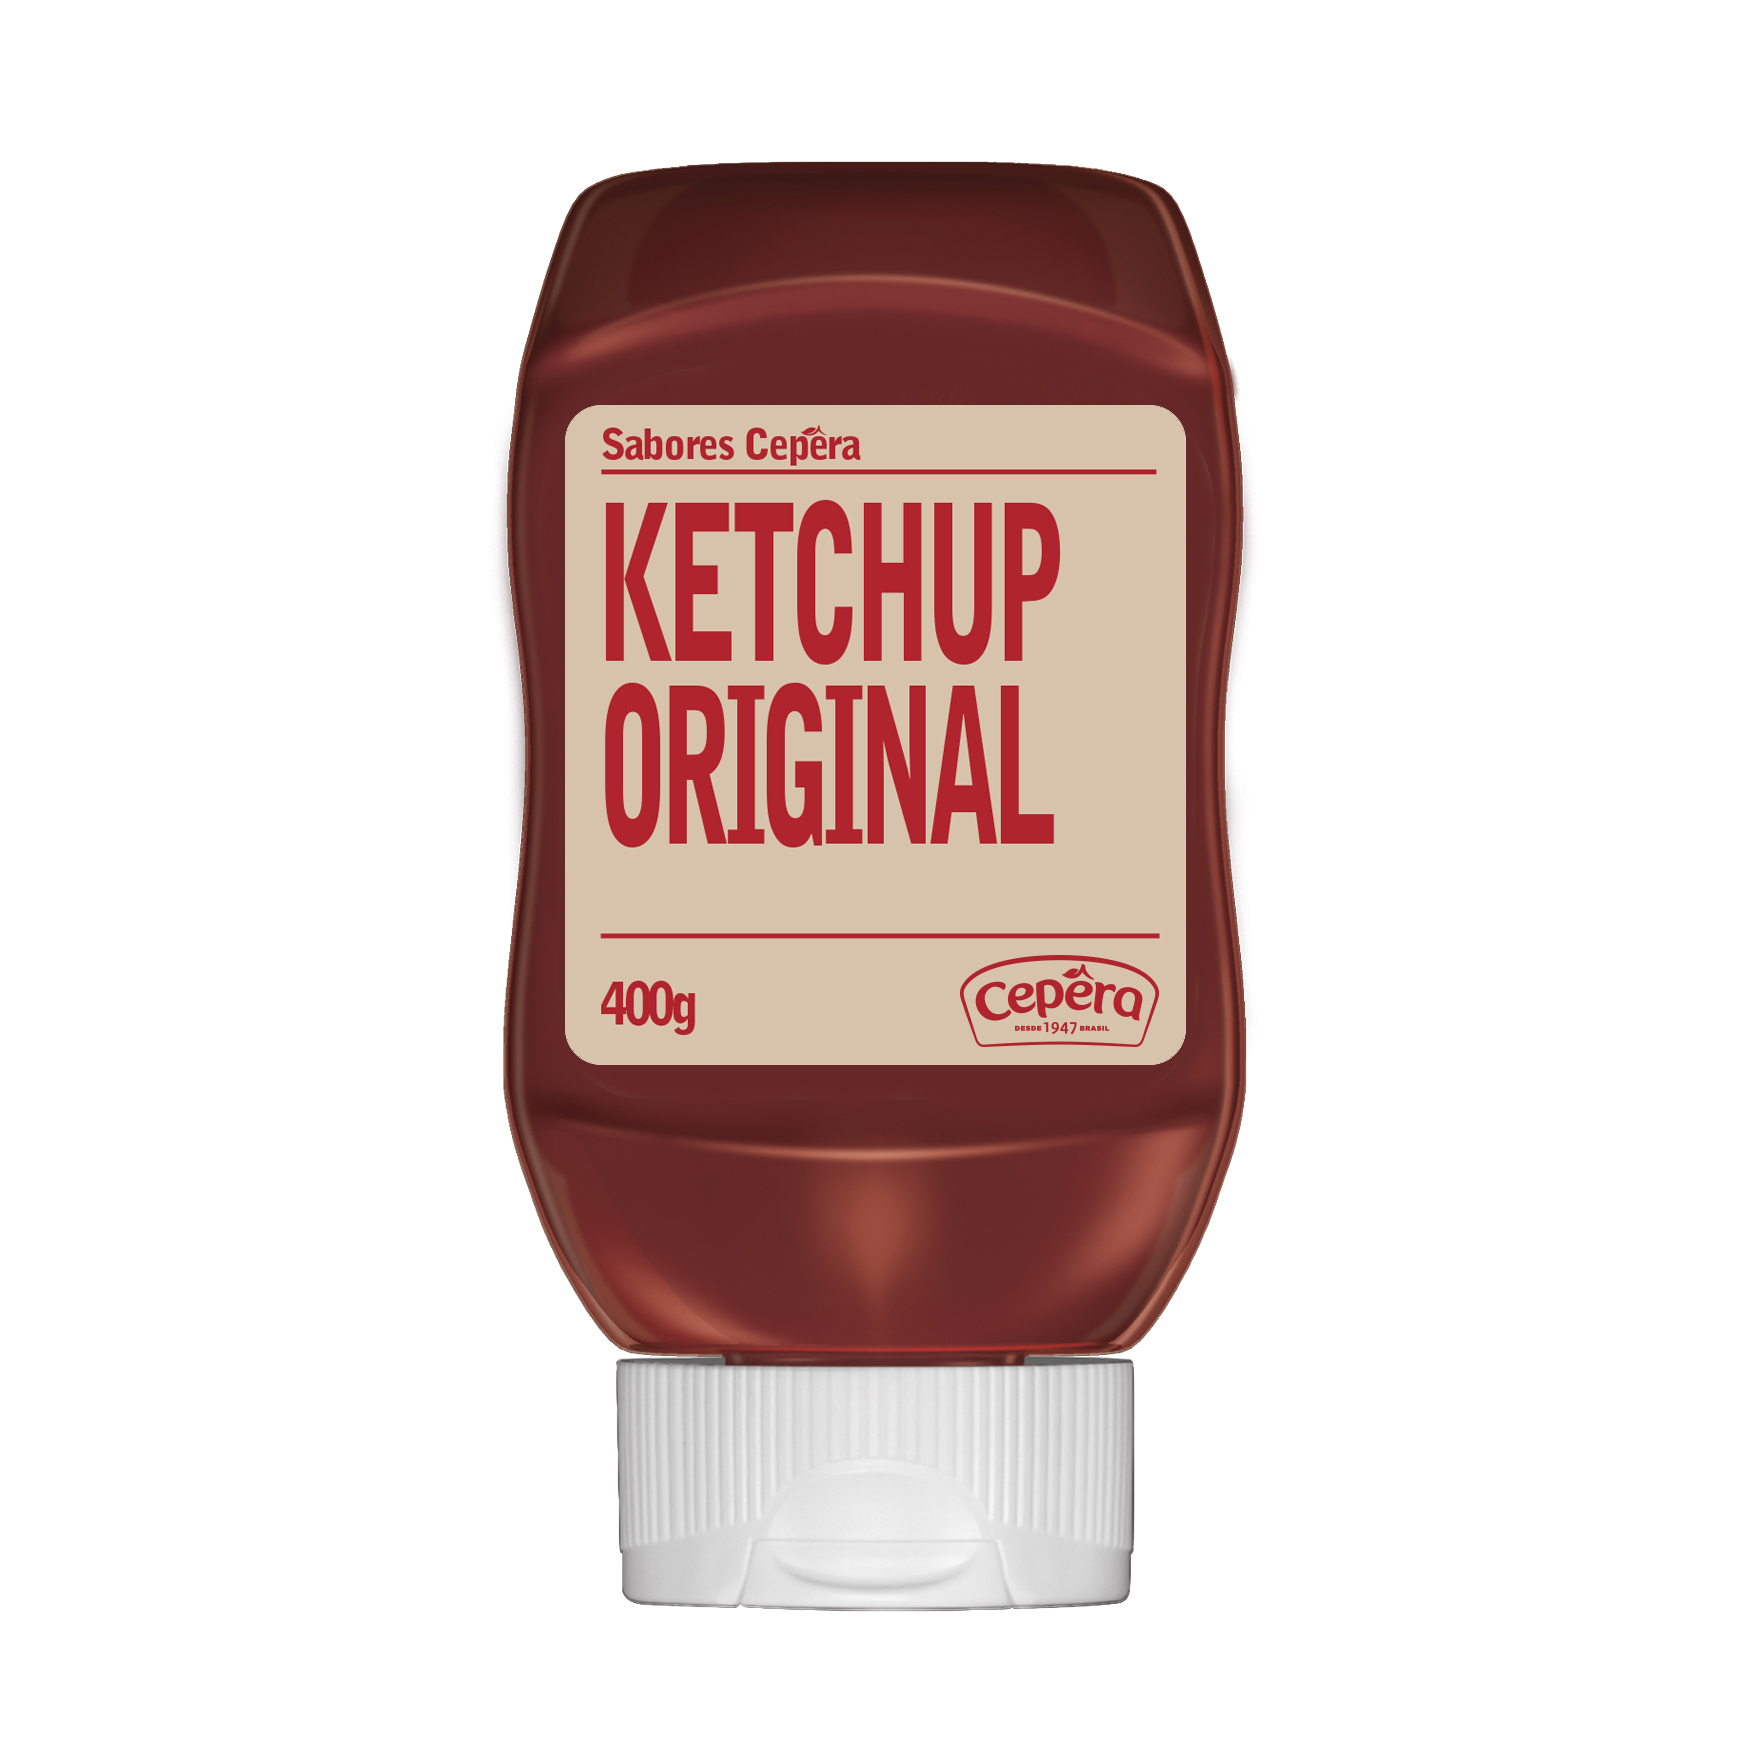 Ketchup Original (Sabores Cepêra)